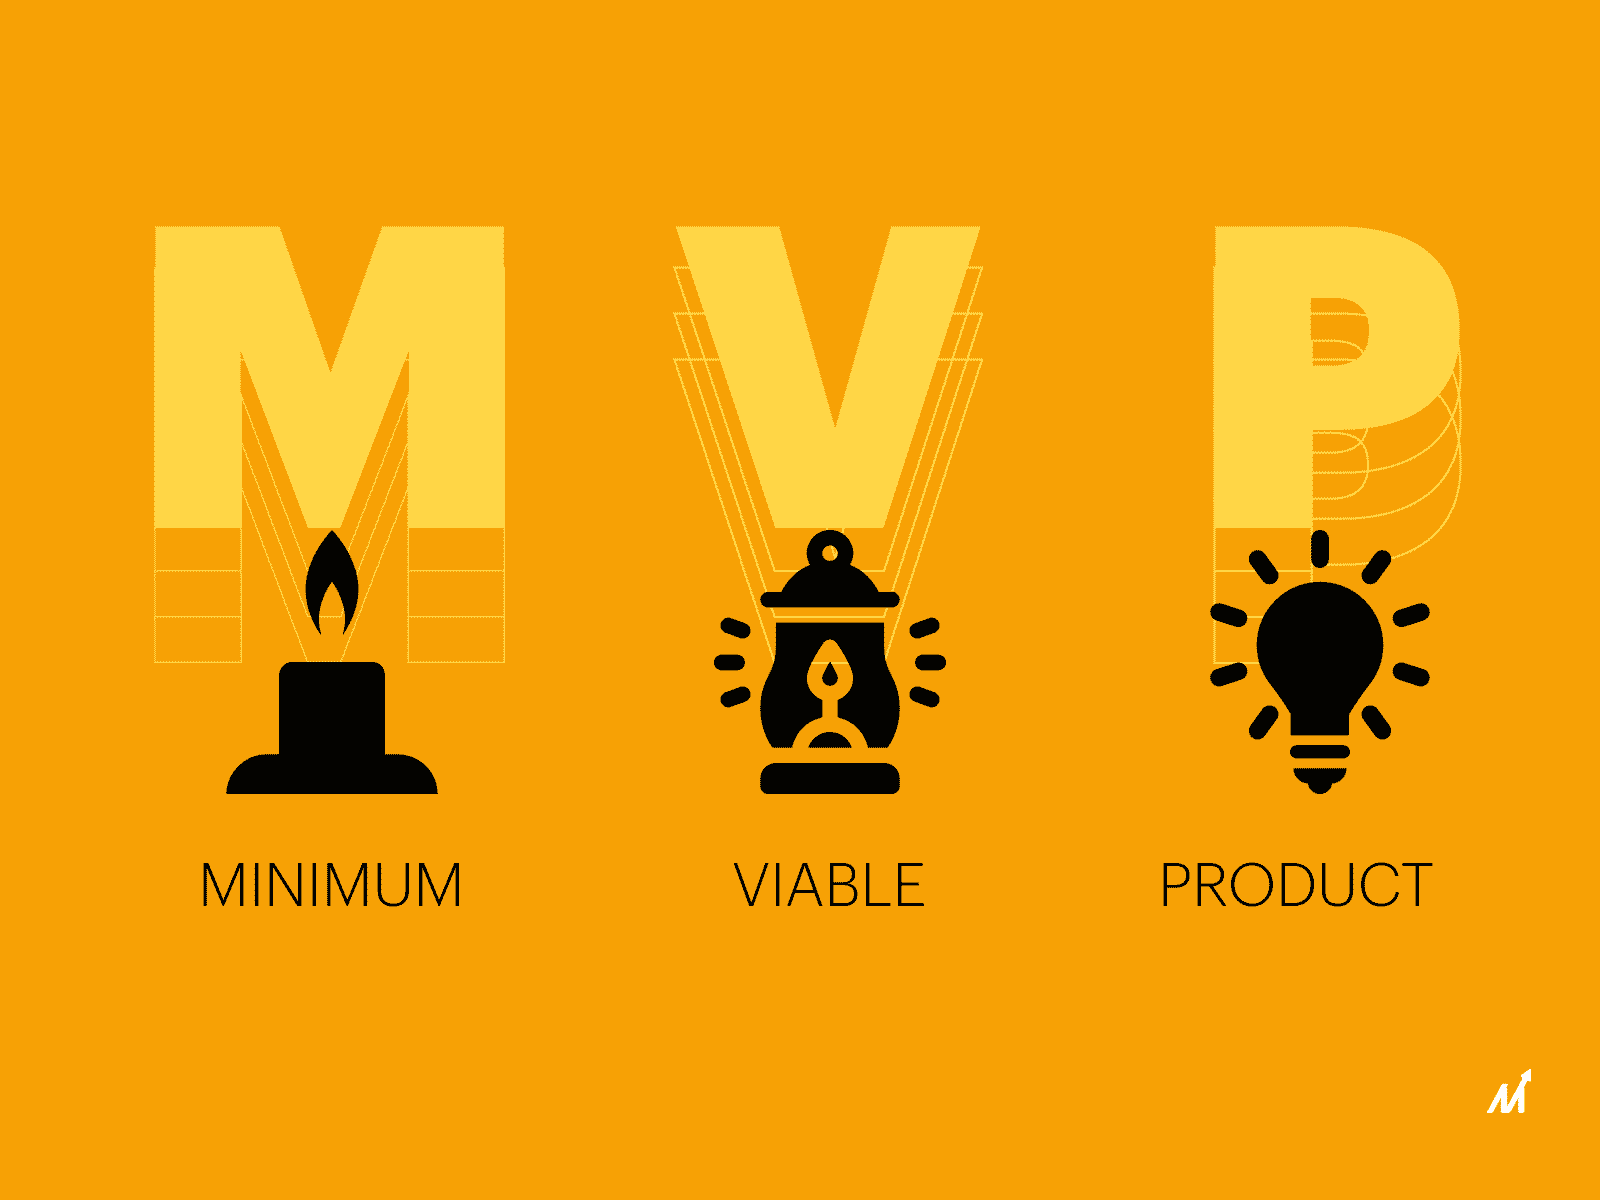 MVP development